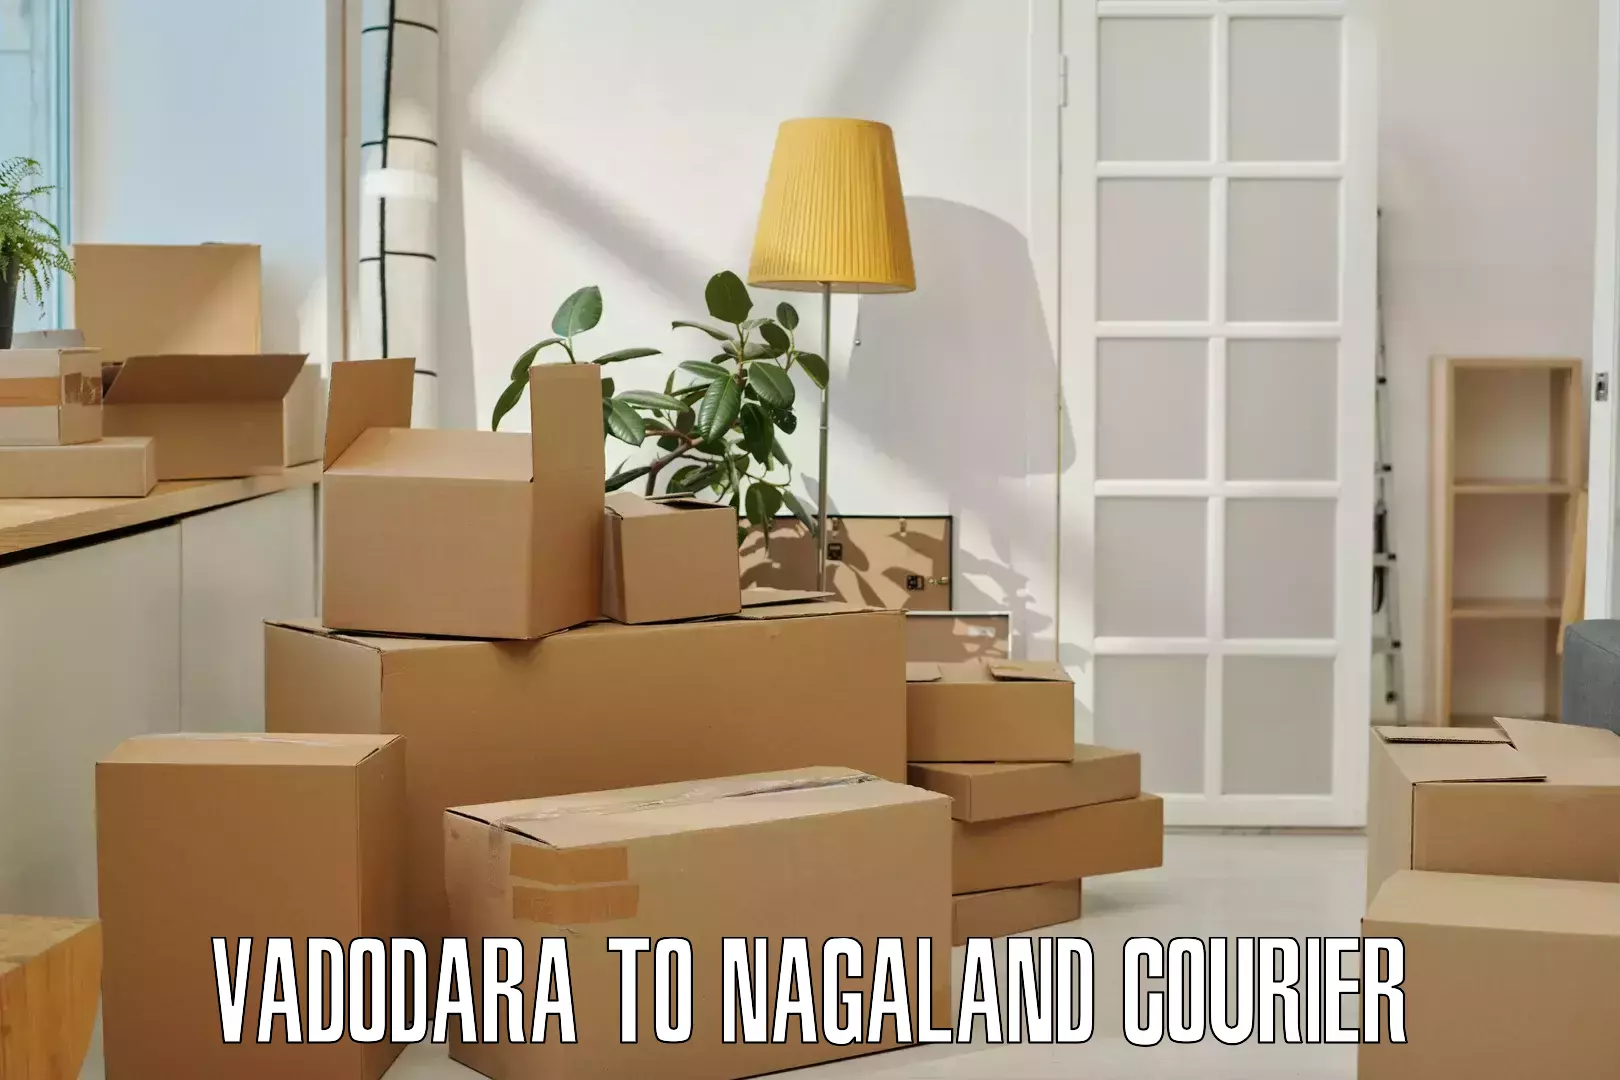 Express package services Vadodara to Nagaland